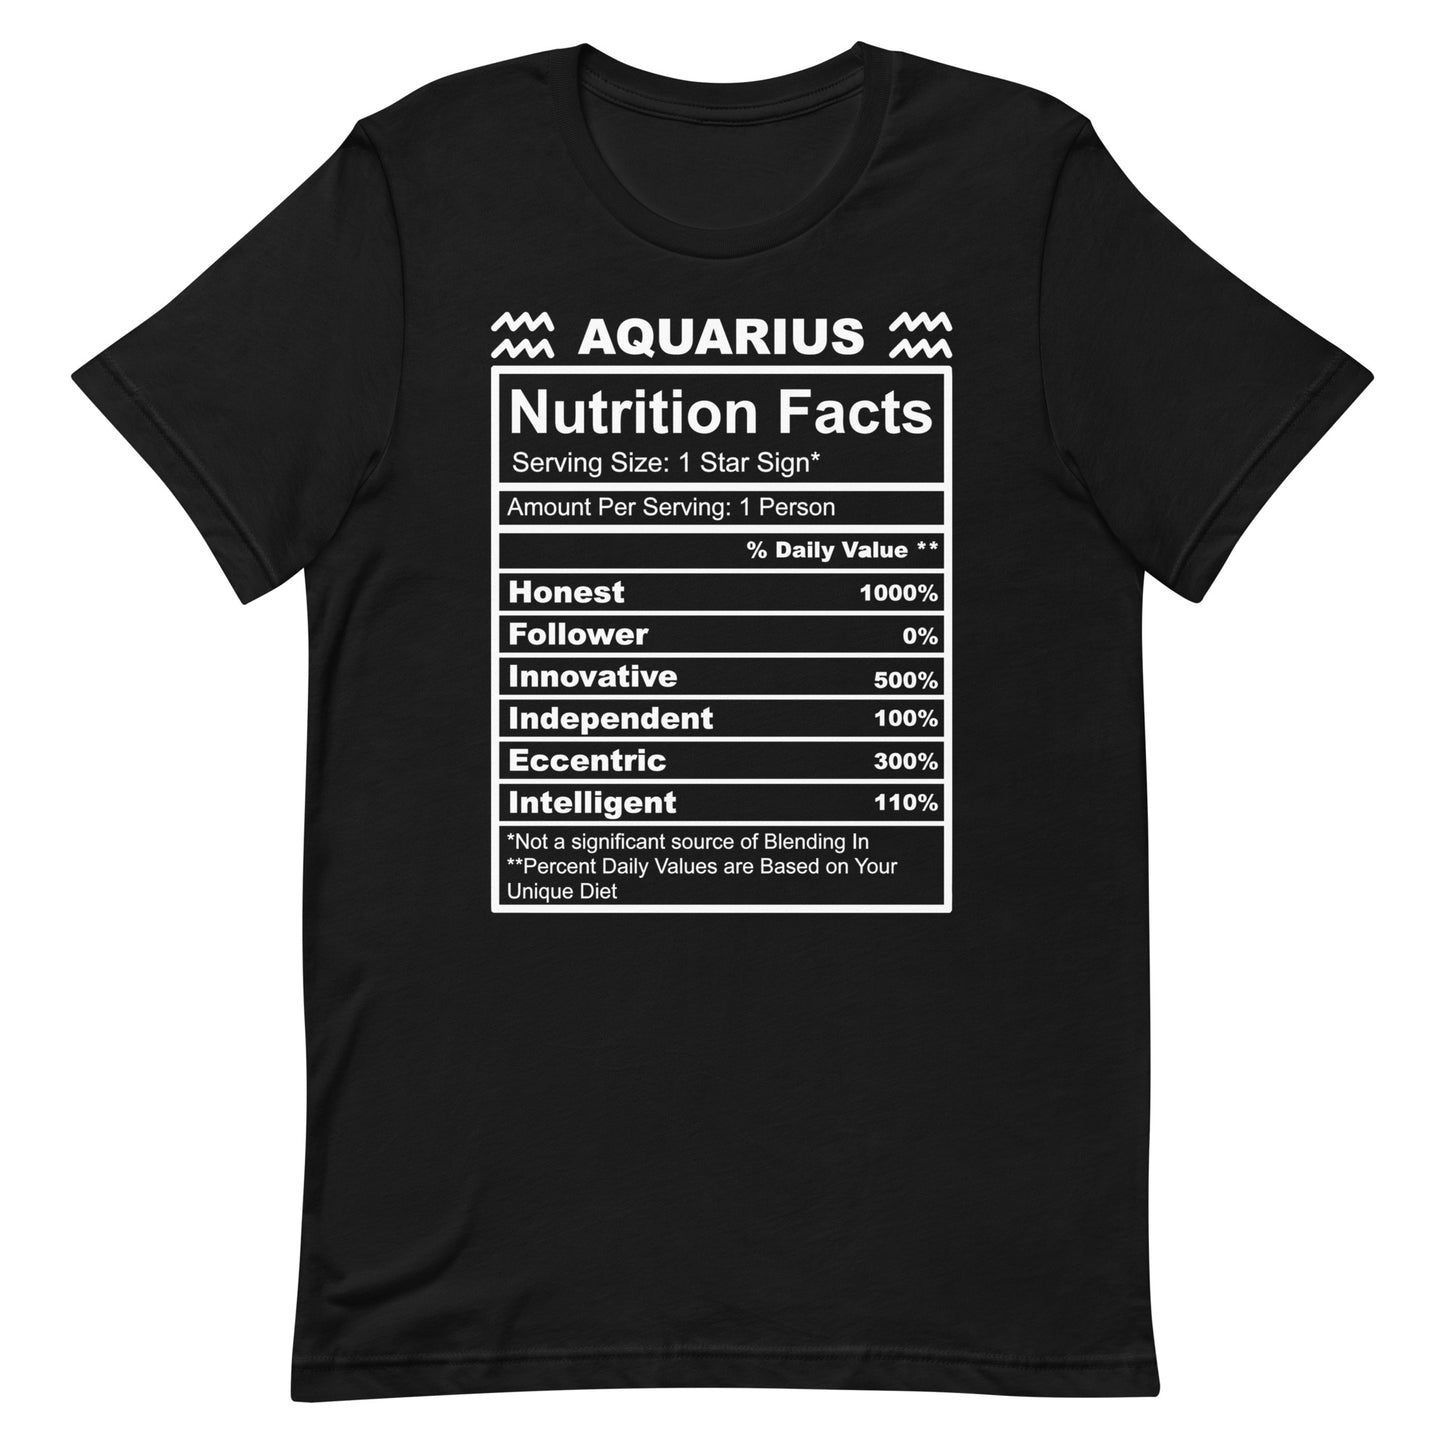 AQUARIUS - L-XL - Unisex T-Shirt (white letters)